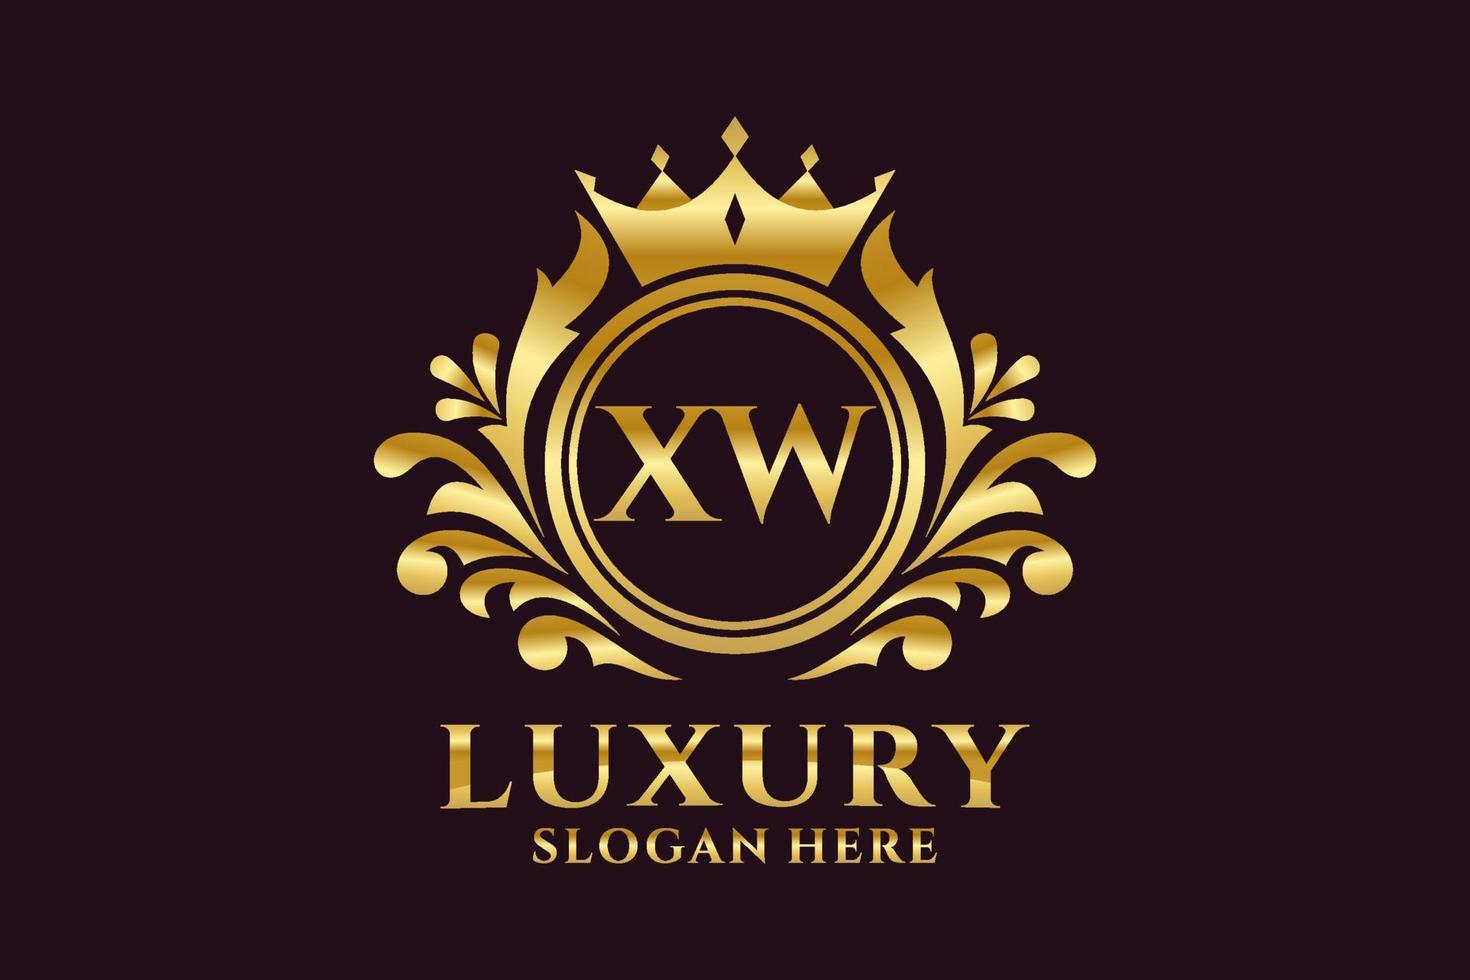 modèle de logo de luxe royal lettre initiale xw dans l'art vectoriel pour les projets de marque luxueux et autres illustrations vectorielles.